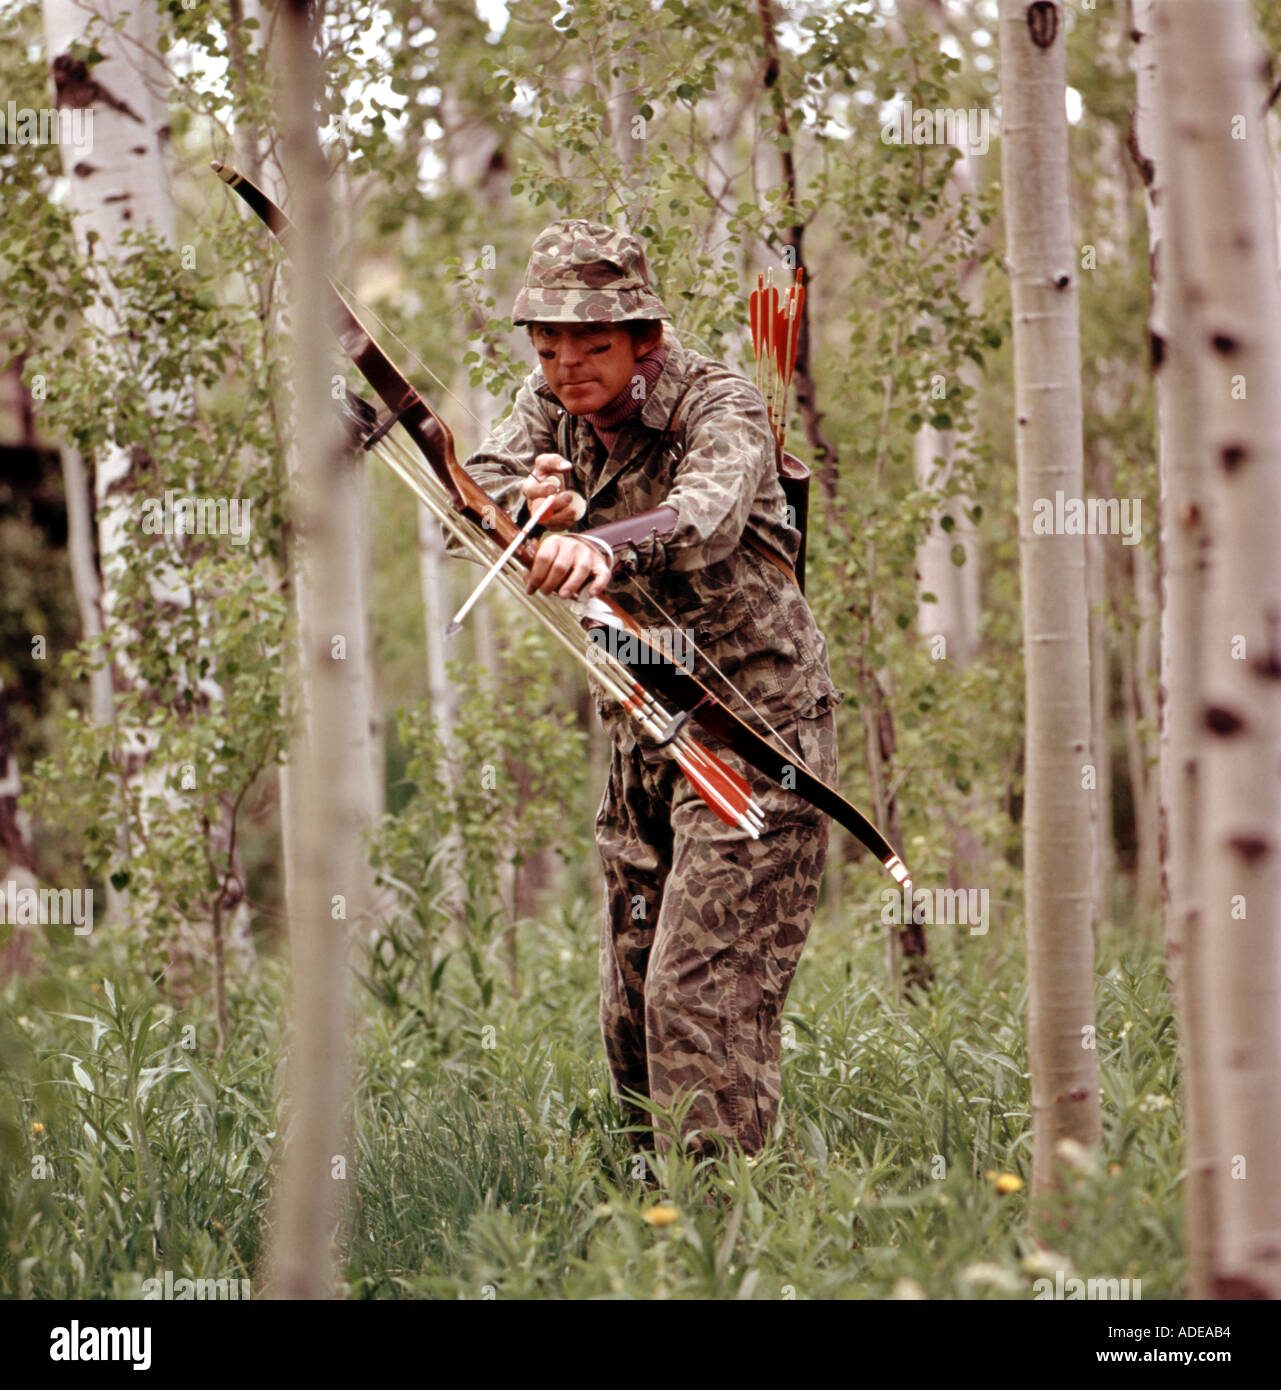 Bogen Jäger gekleidet in Camouflage-Outfit-Jagd in einer waldreichen Gegend Stockfoto